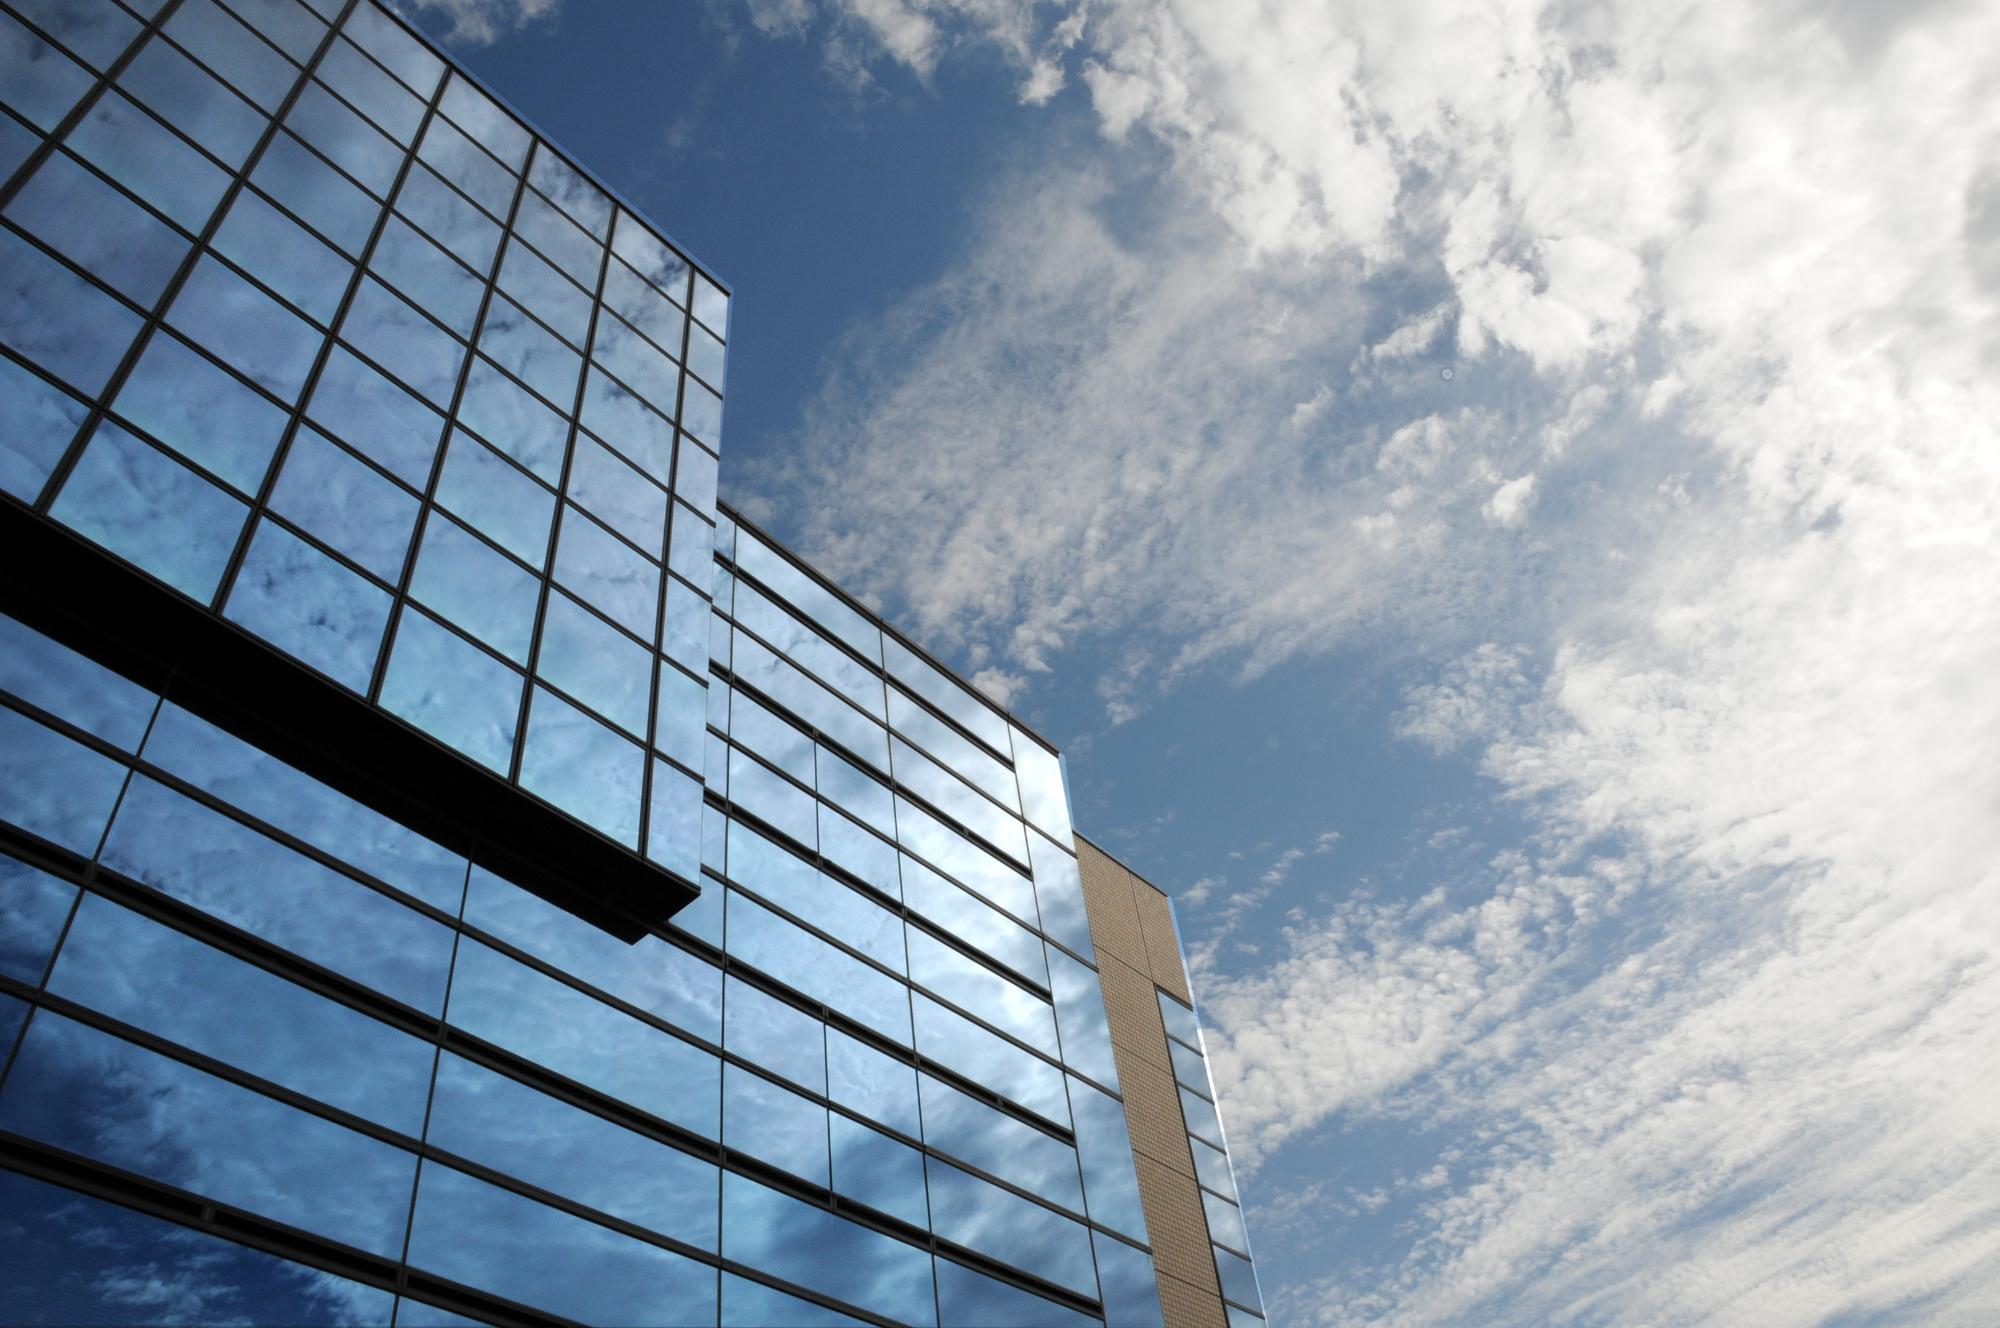 シビックセンター（役場建物）外観と雲がかった青空の仰視写真